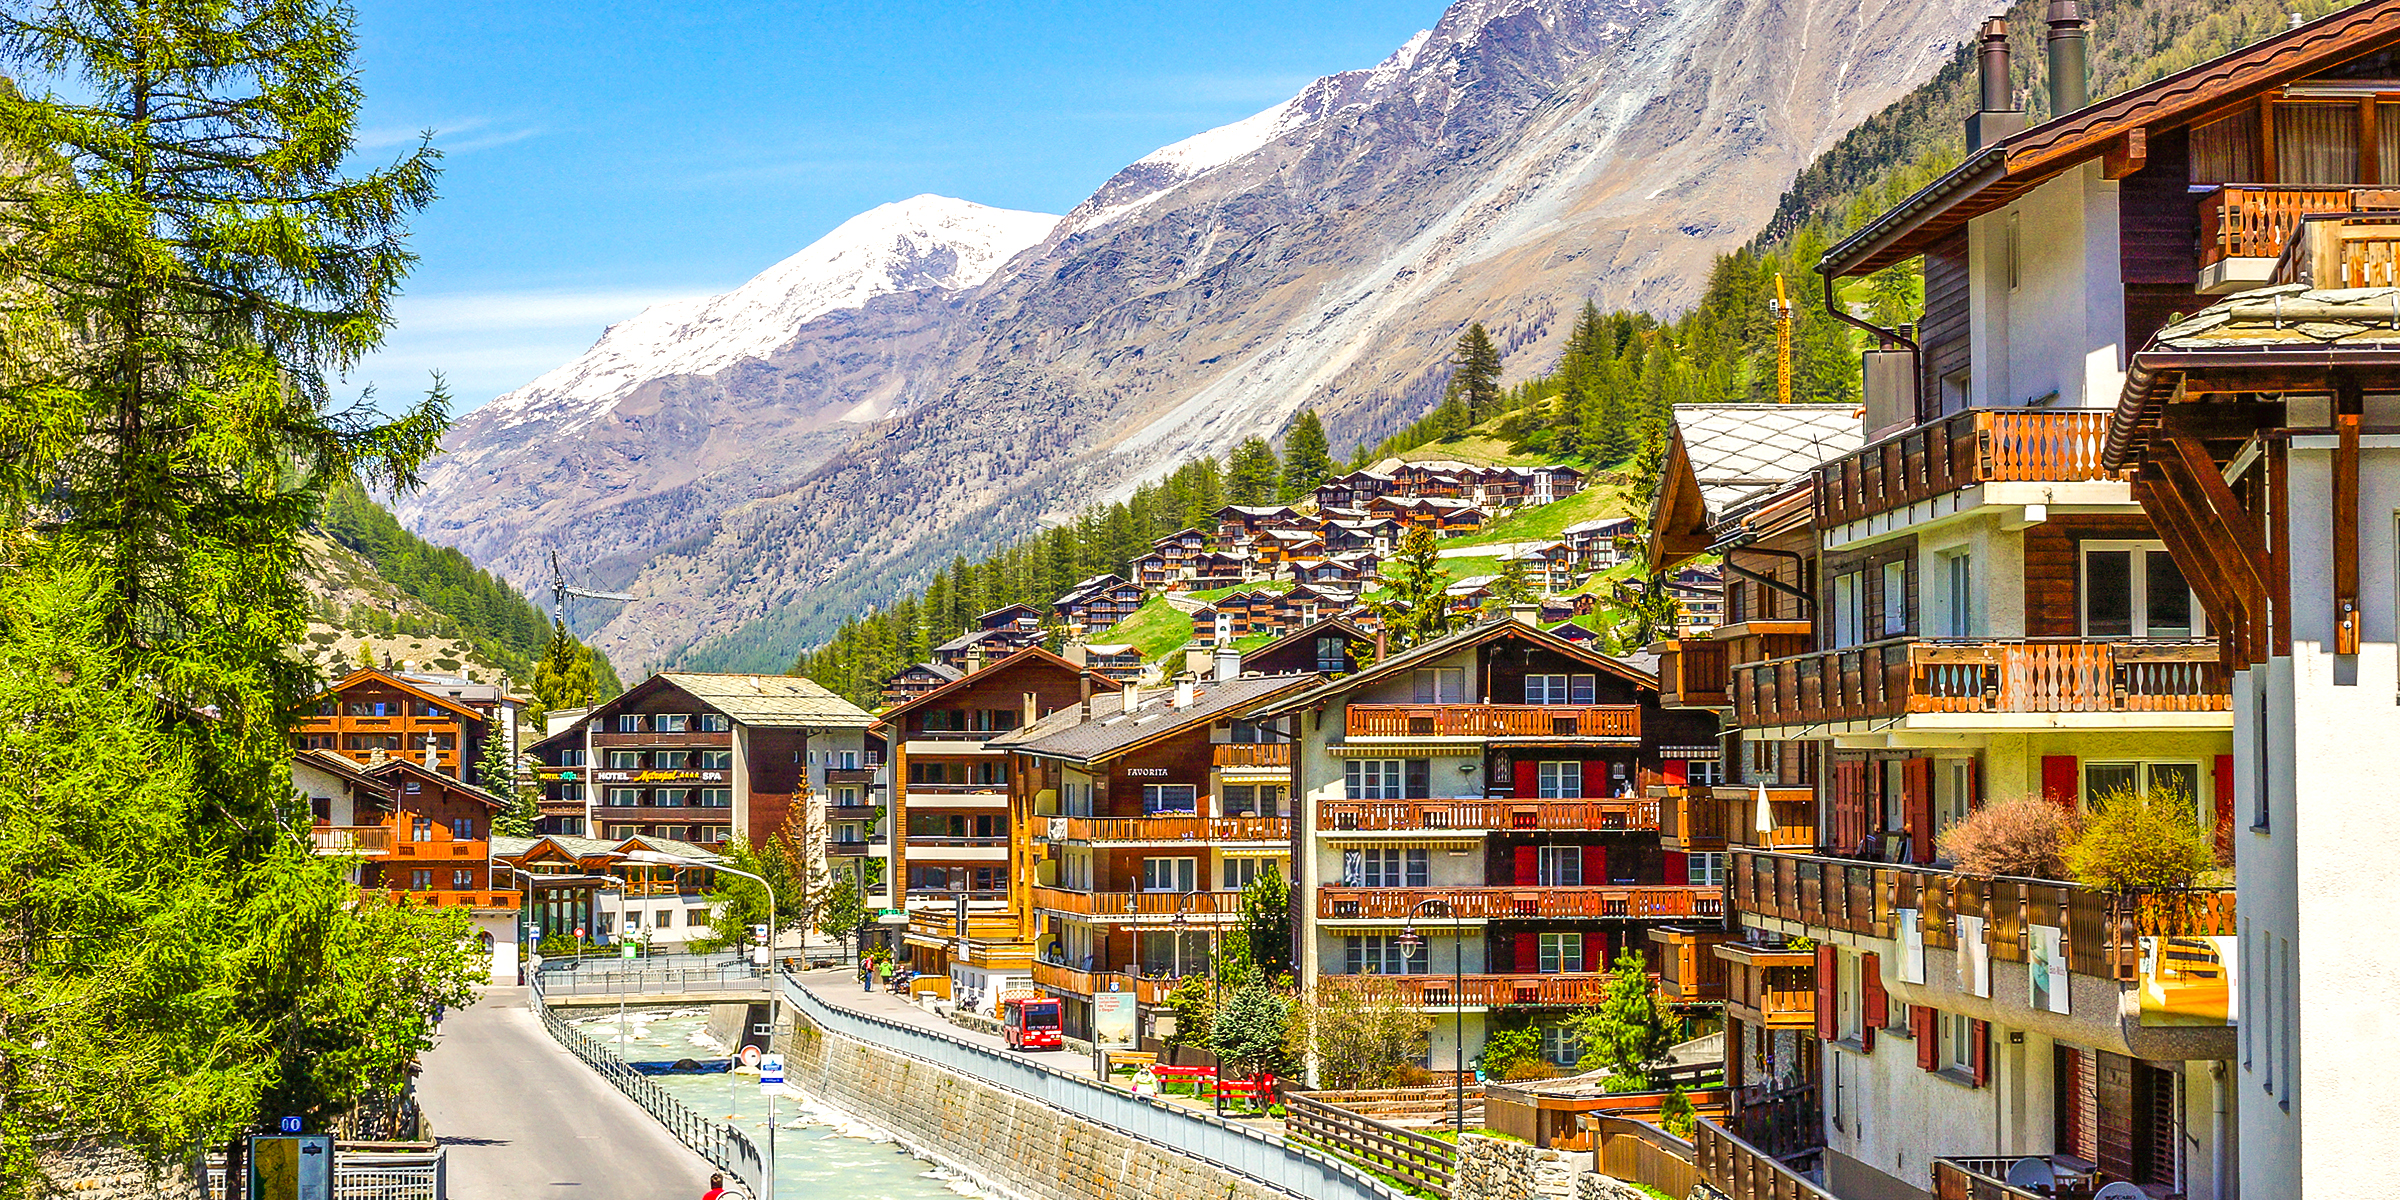 The stunning landscape of Zermatt, Switzerland | Source: Shutterstock